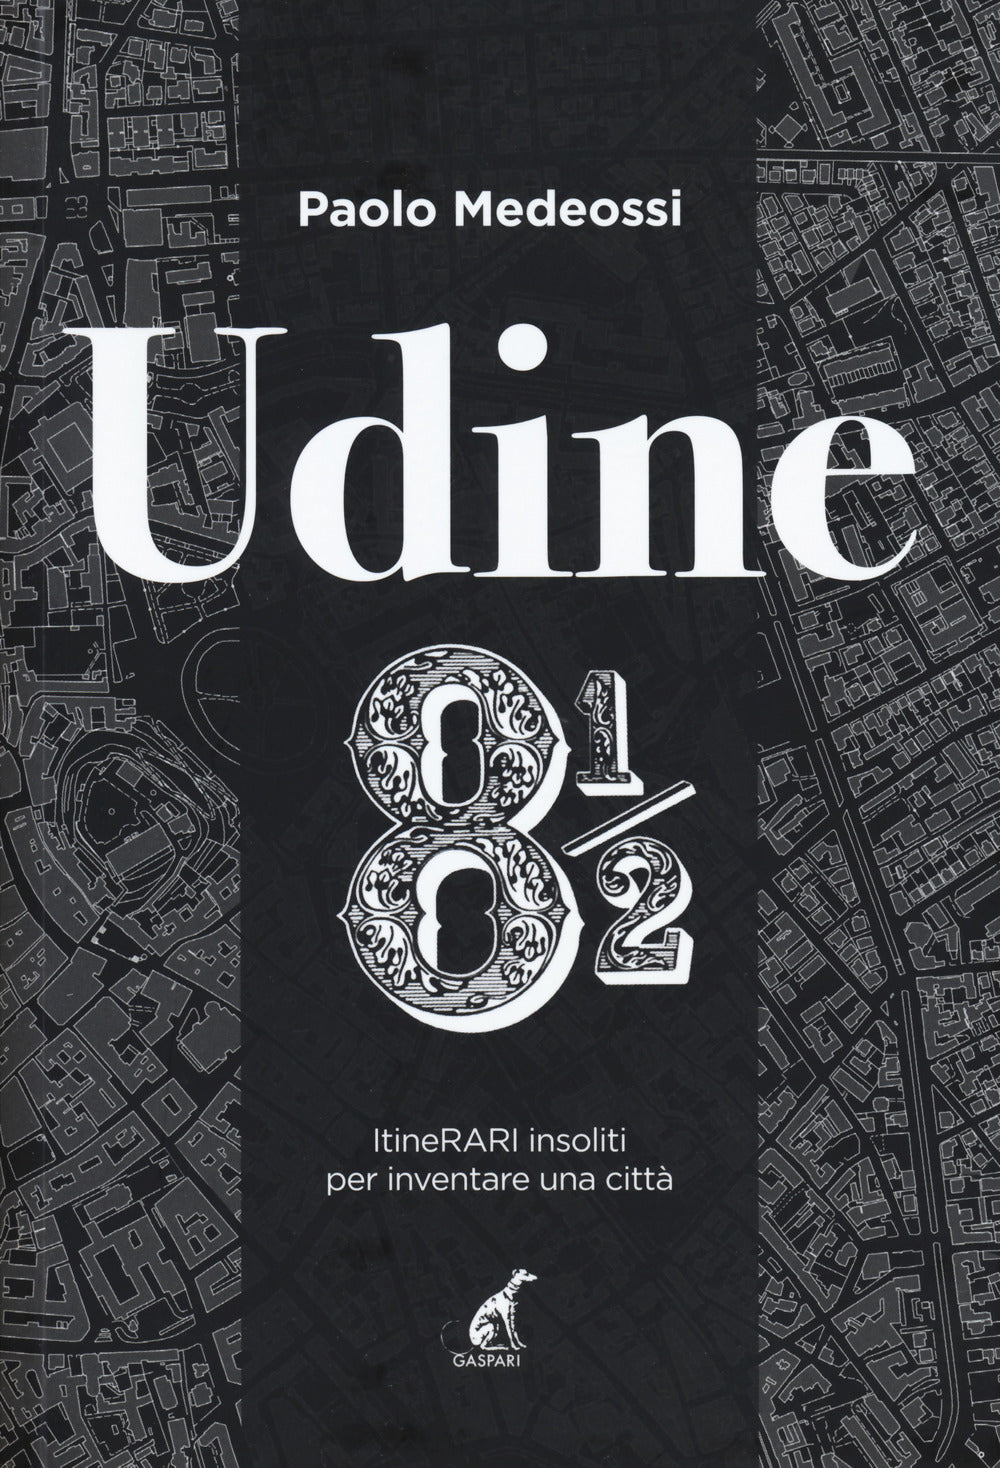 Udine 8 1/2. ItineRARI insoliti per inventare una città.